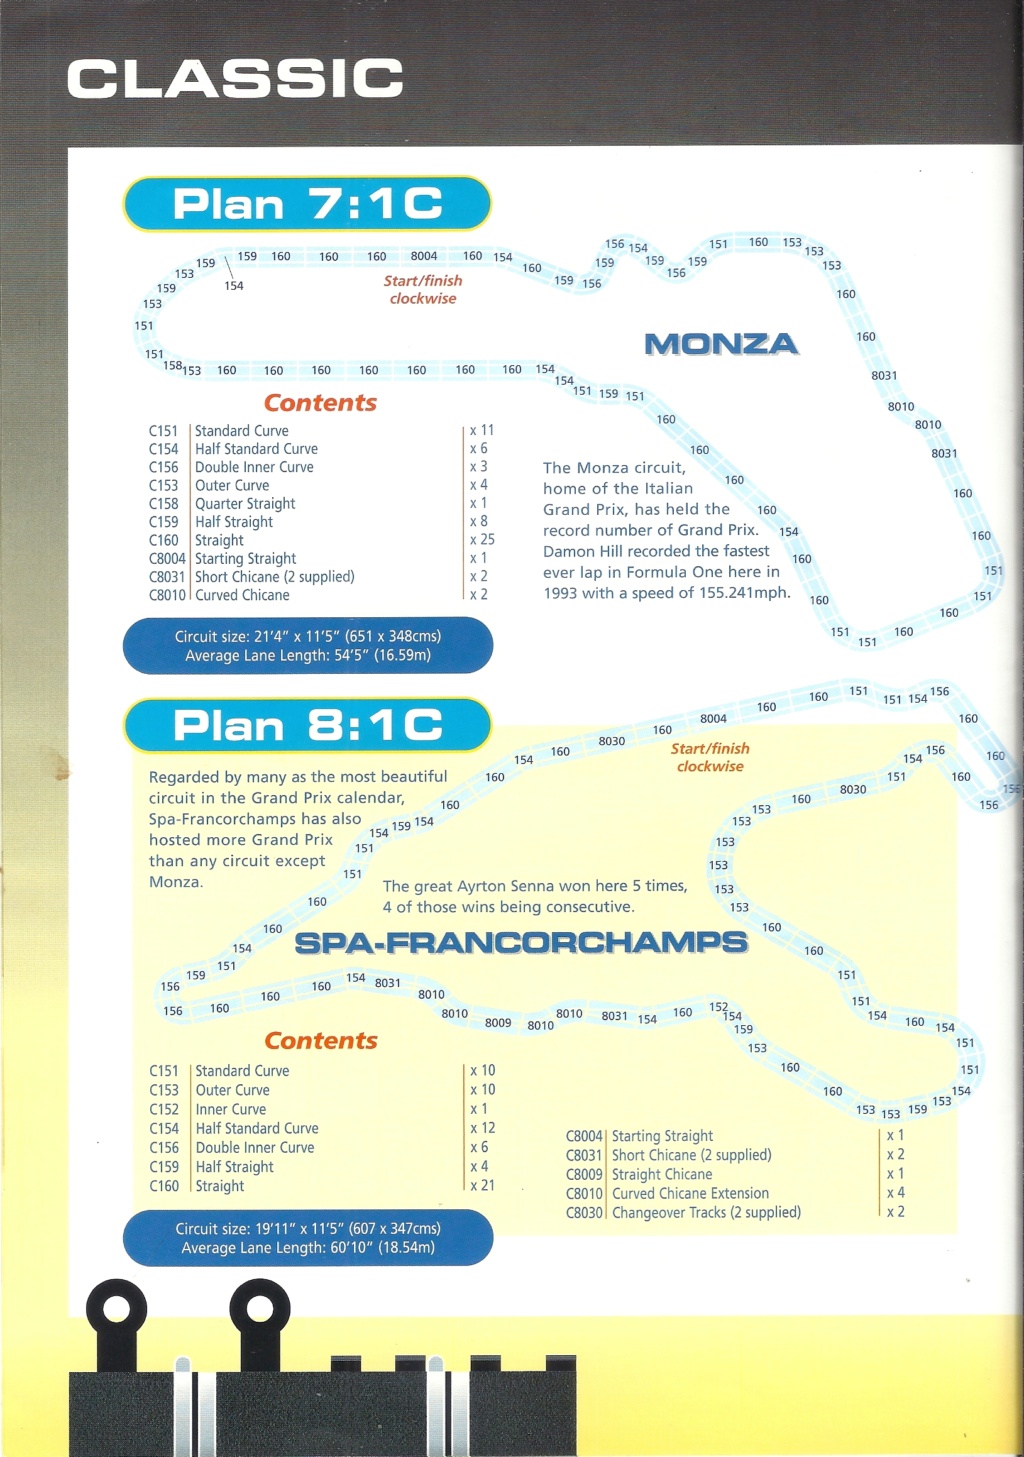 [SCALEXTRIC 2004] Catalogue plans SPORT / CLASSIC Réf C8113 2004 0 Scale864